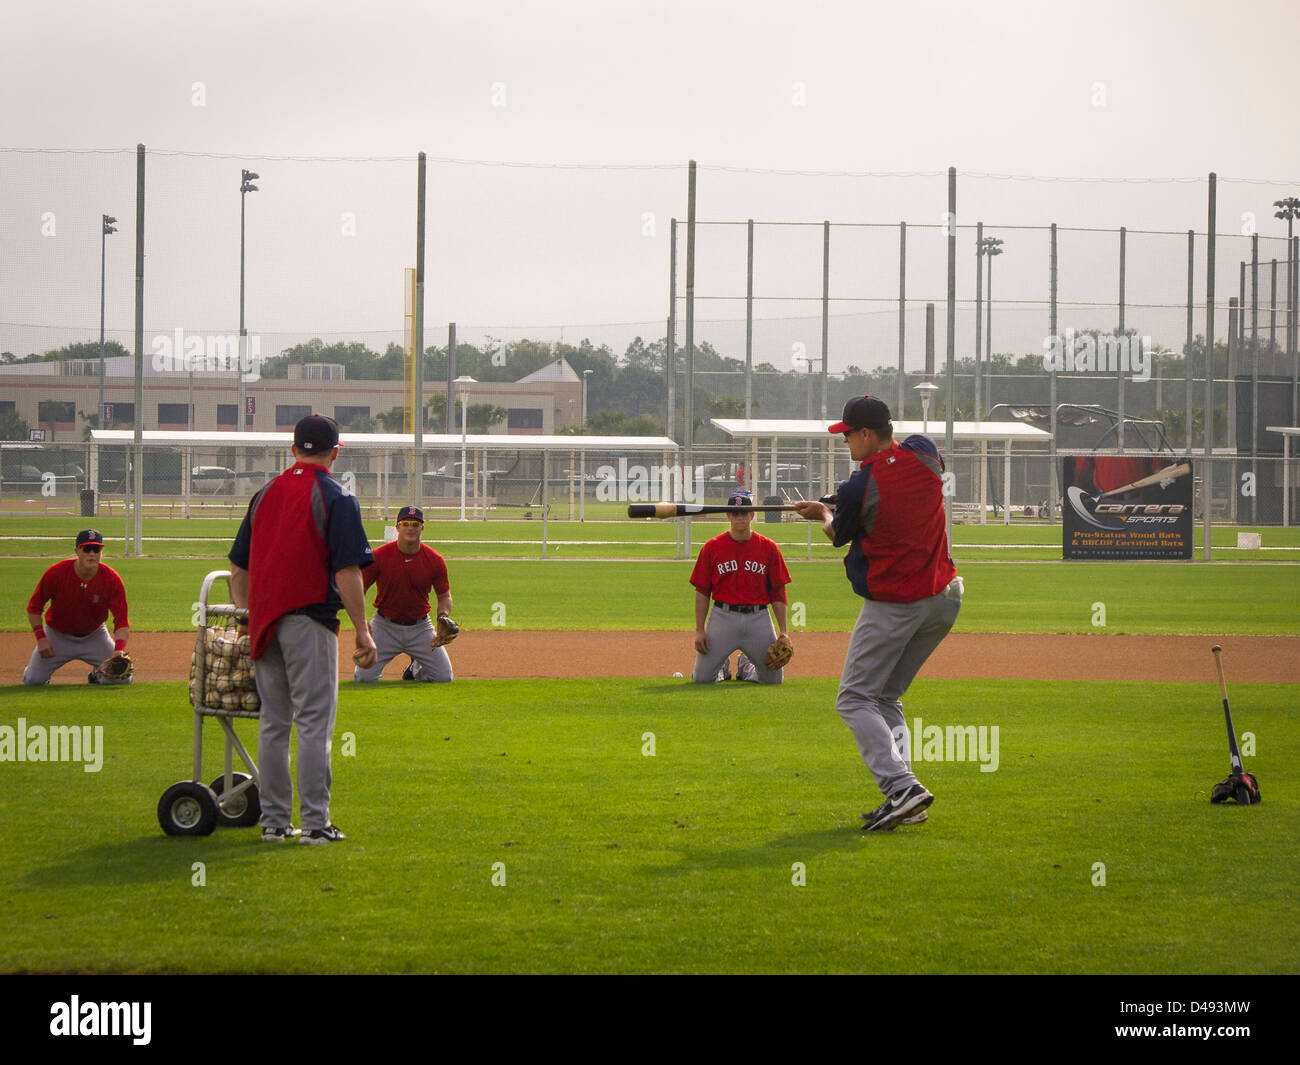 Red Sox de Boston pratique infielders attraper un ballon au sol lors d'un matin la pratique au Fenway South de Fort Myers, Floride Banque D'Images